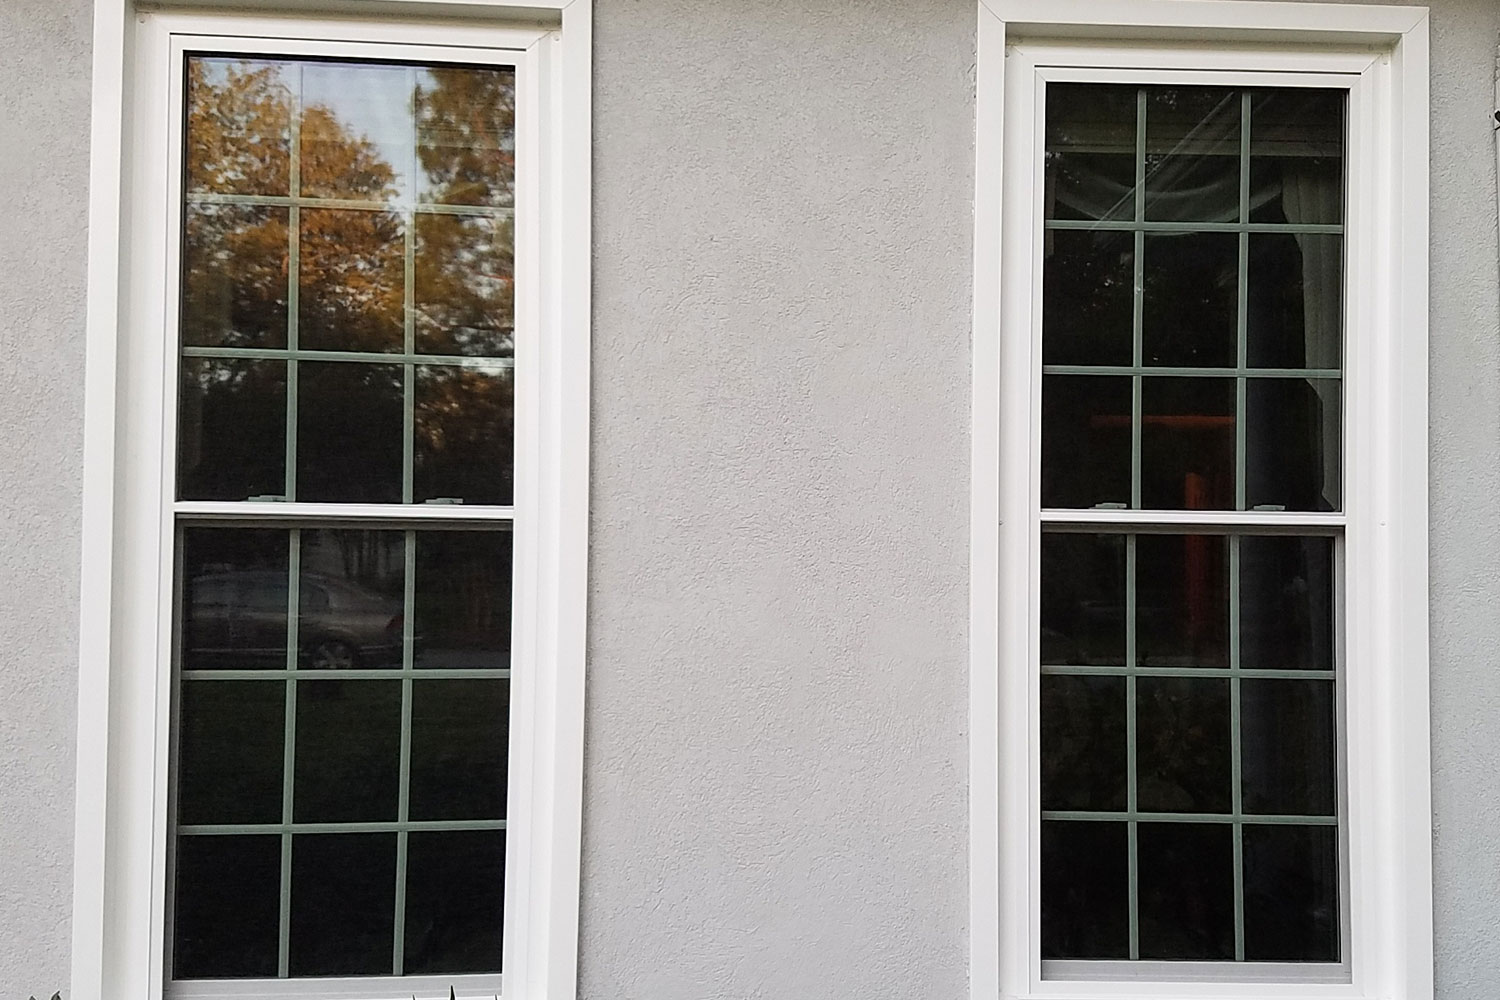 Two white windows